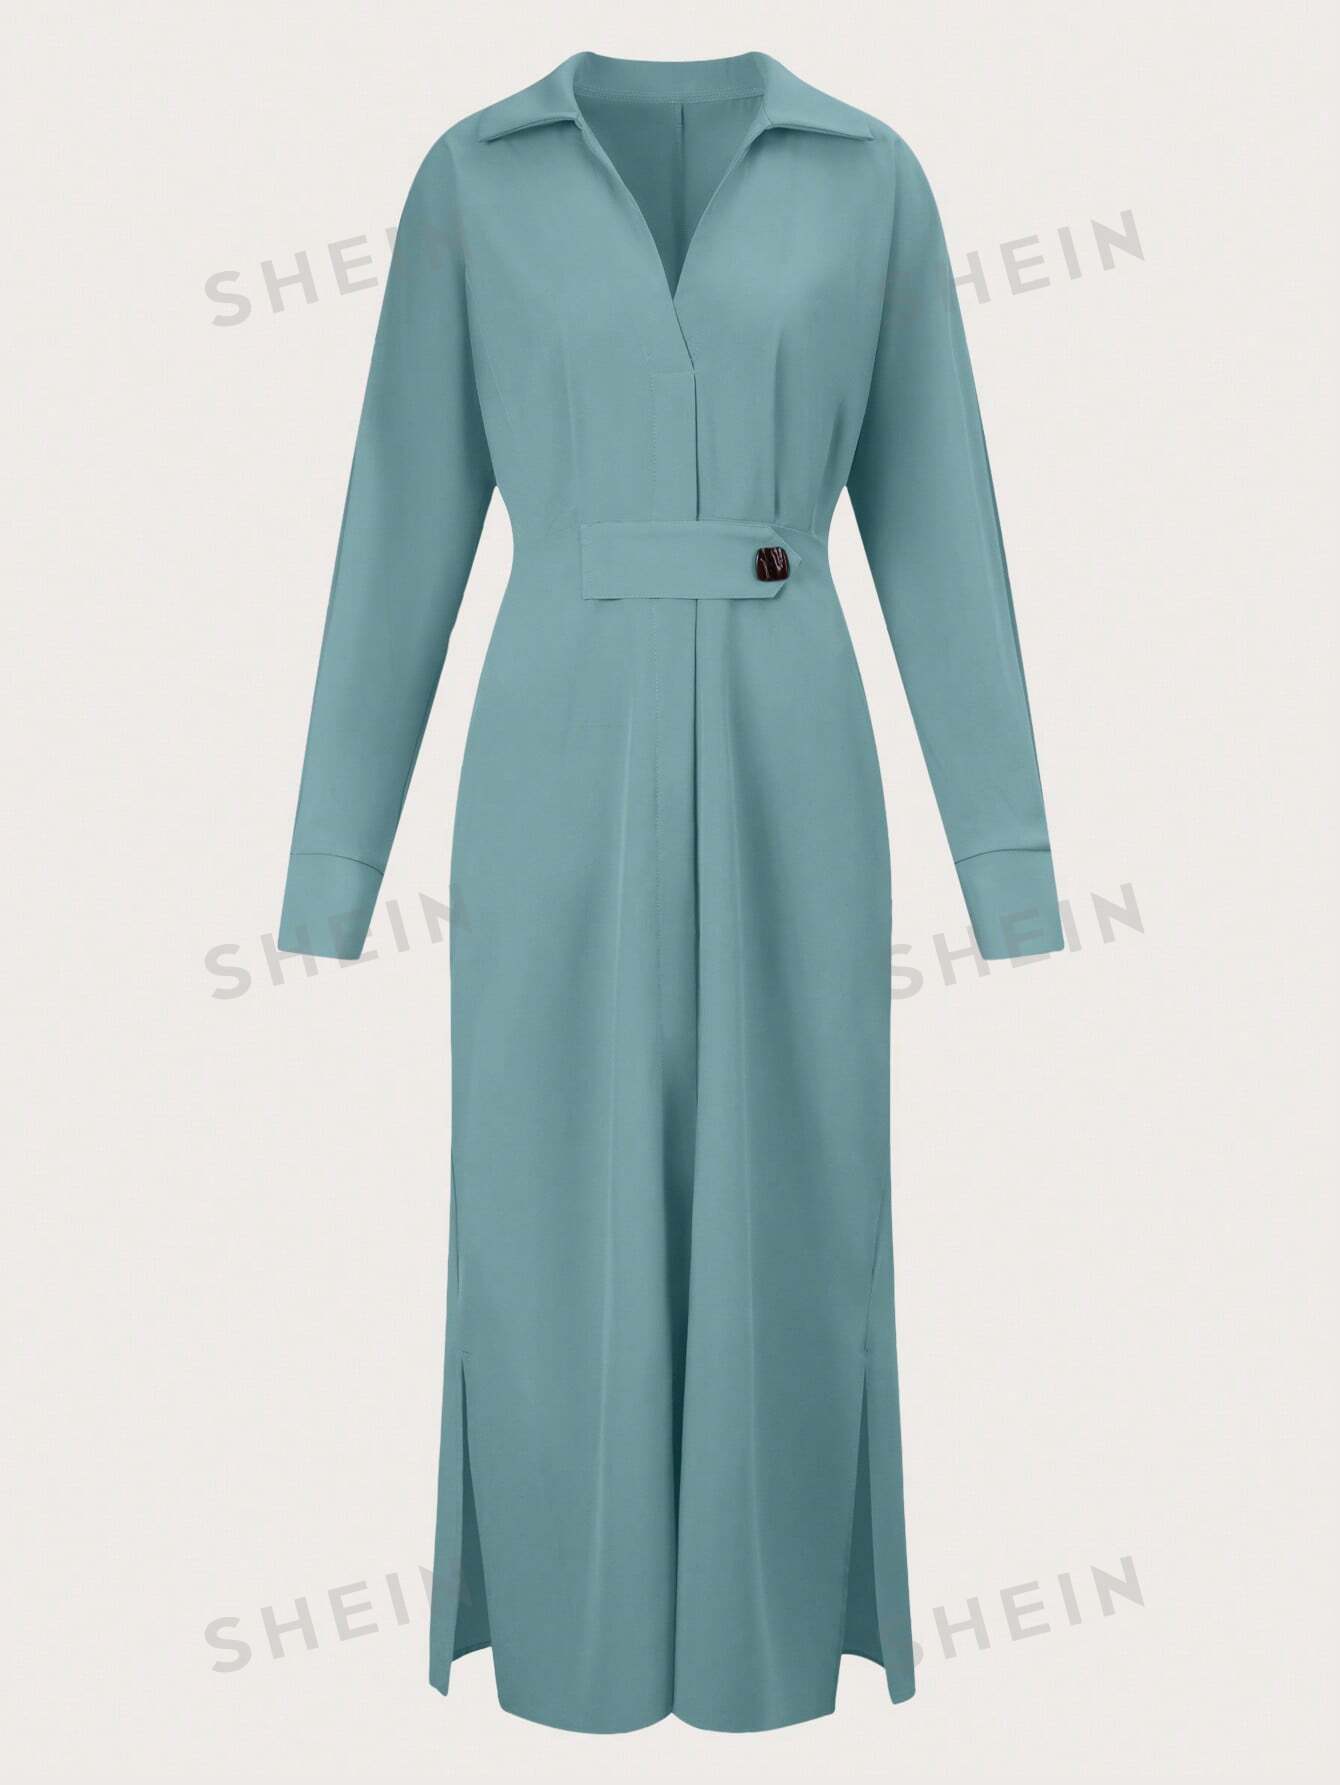 SHEIN Privé Однотонное платье макси с v-образным вырезом, зеленый shein privé платье на тонких бретельках с глубоким v образным вырезом и цветочным тиснением розовый